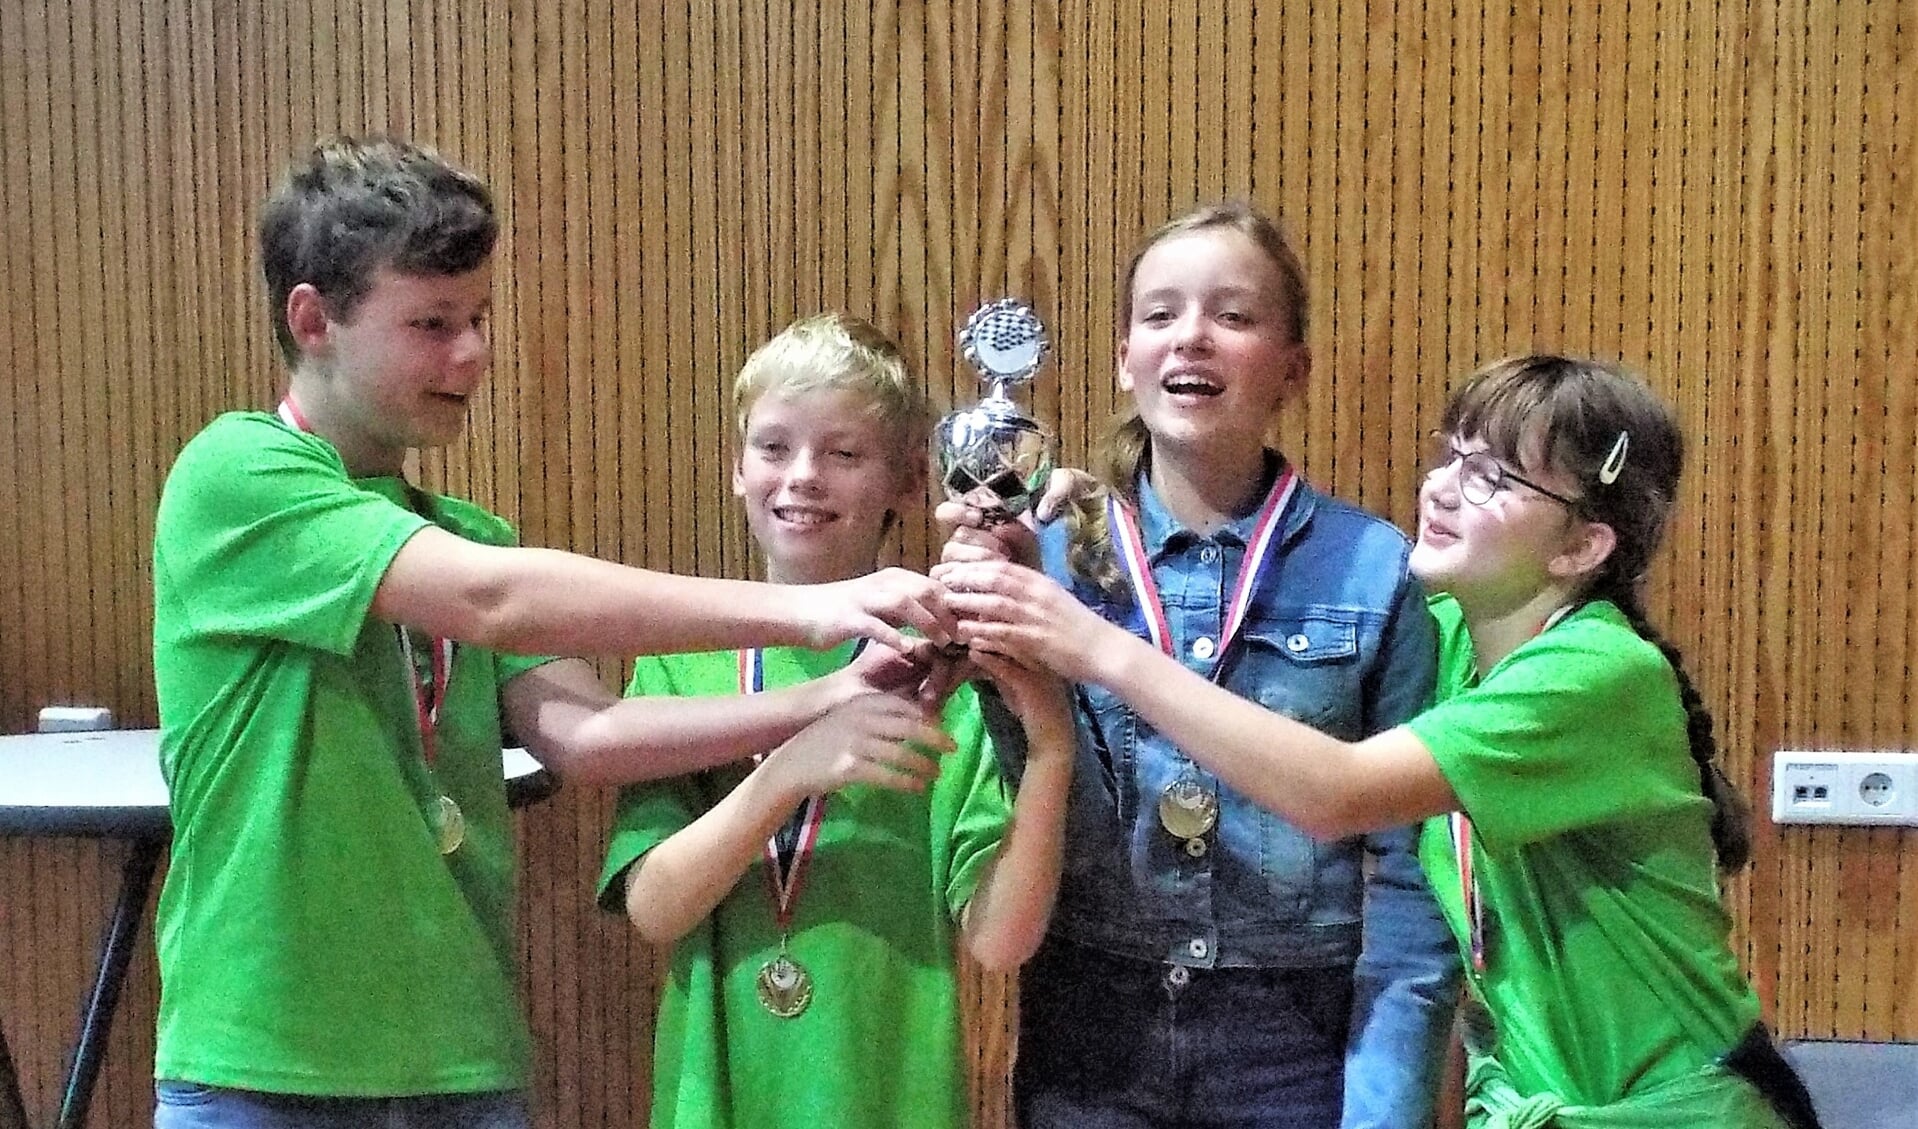 In de categorie pupillen won een team van De Groen. 